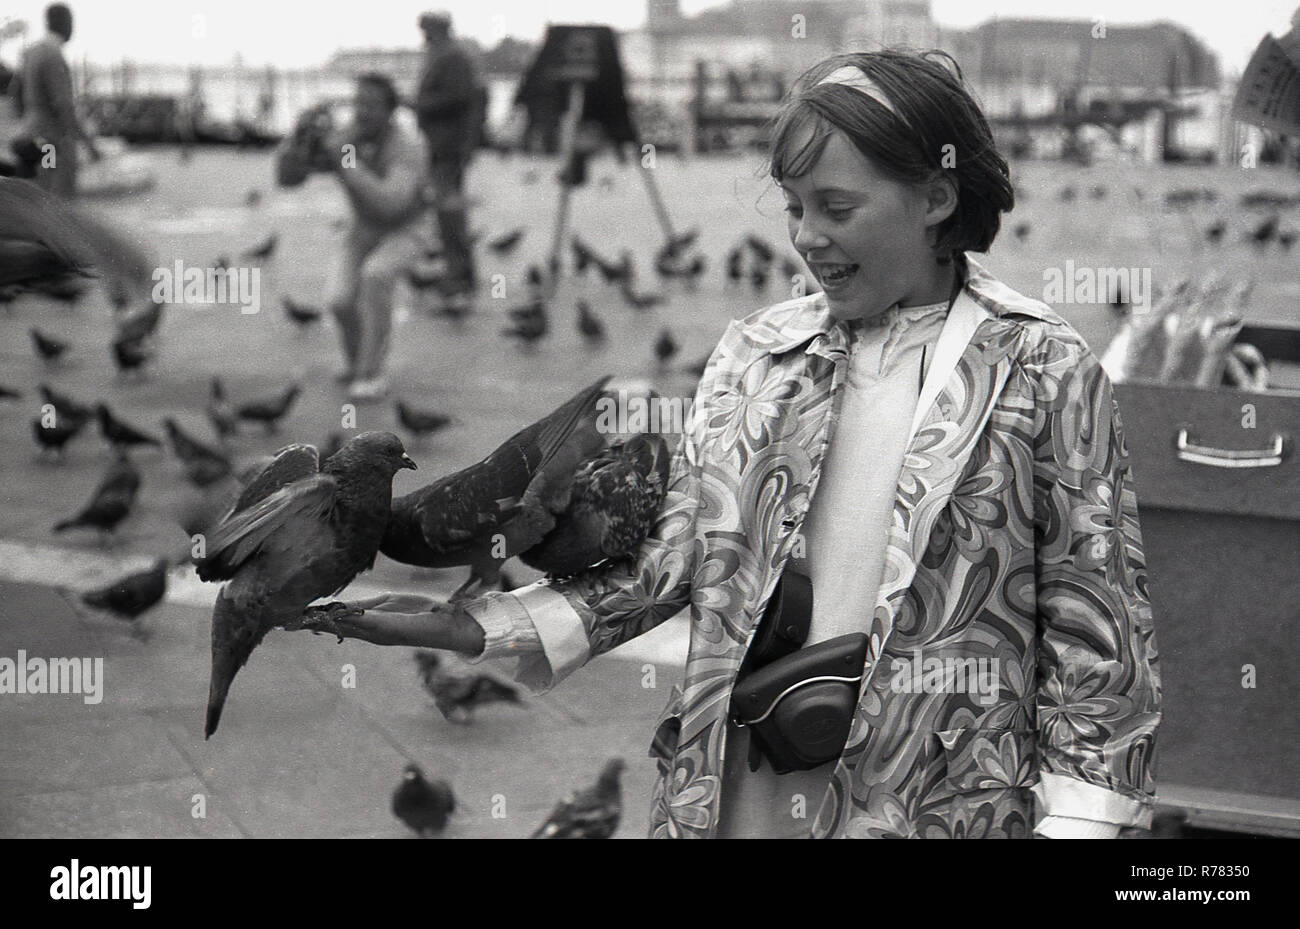 Siebziger Jahre, Tauben auf dem Arm eines jungen Mädchens in einem gemusterten Mantel, das auf dem Markusplatz oder dem Markusplatz in Venedig, Italien, steht. Tauben waren schon immer eine beliebte Touristenattraktion in Venedig und konkurrierten einst mit Katzen als die traditionellen, wenn auch inoffiziellen Maskottchen der Lagunenstadt. Stockfoto